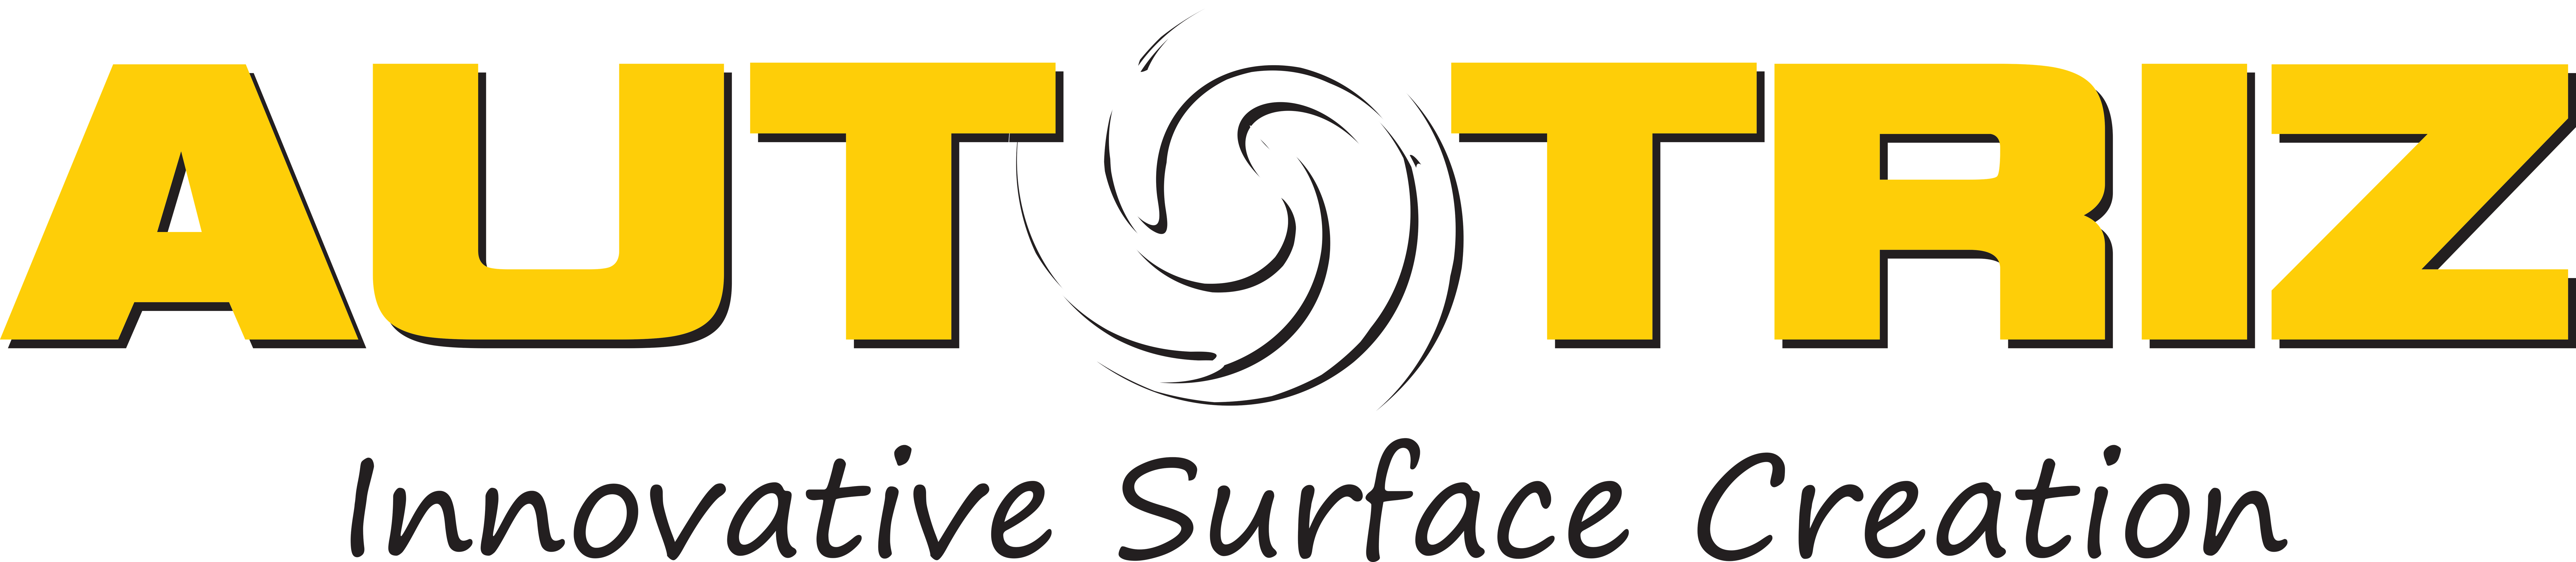 OptiCoat-Logo